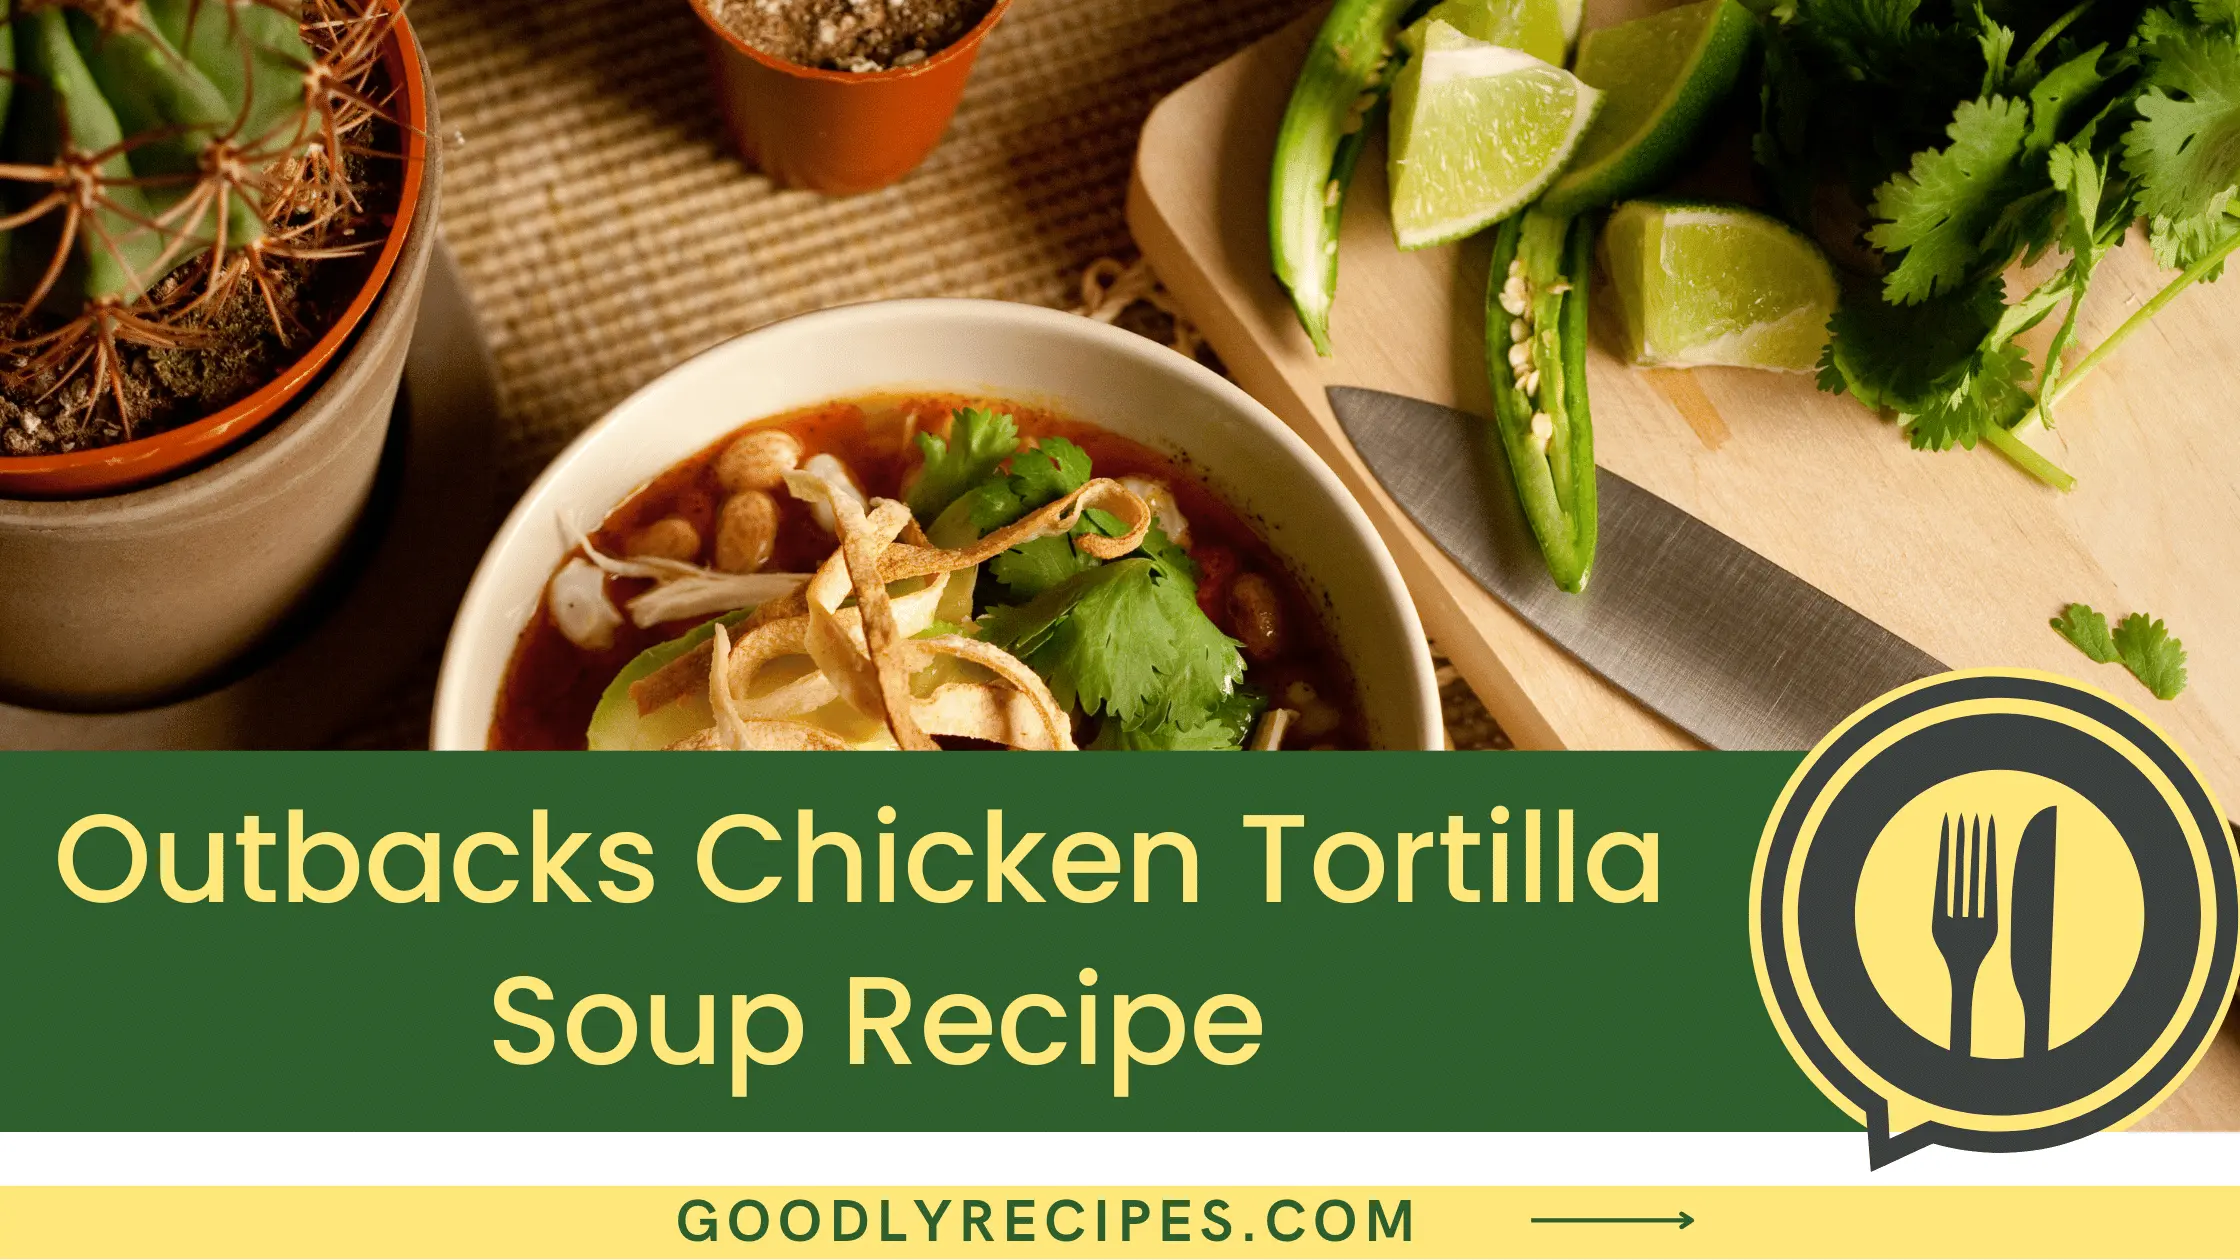 Outbacks Chicken Tortilla Soup Recipes